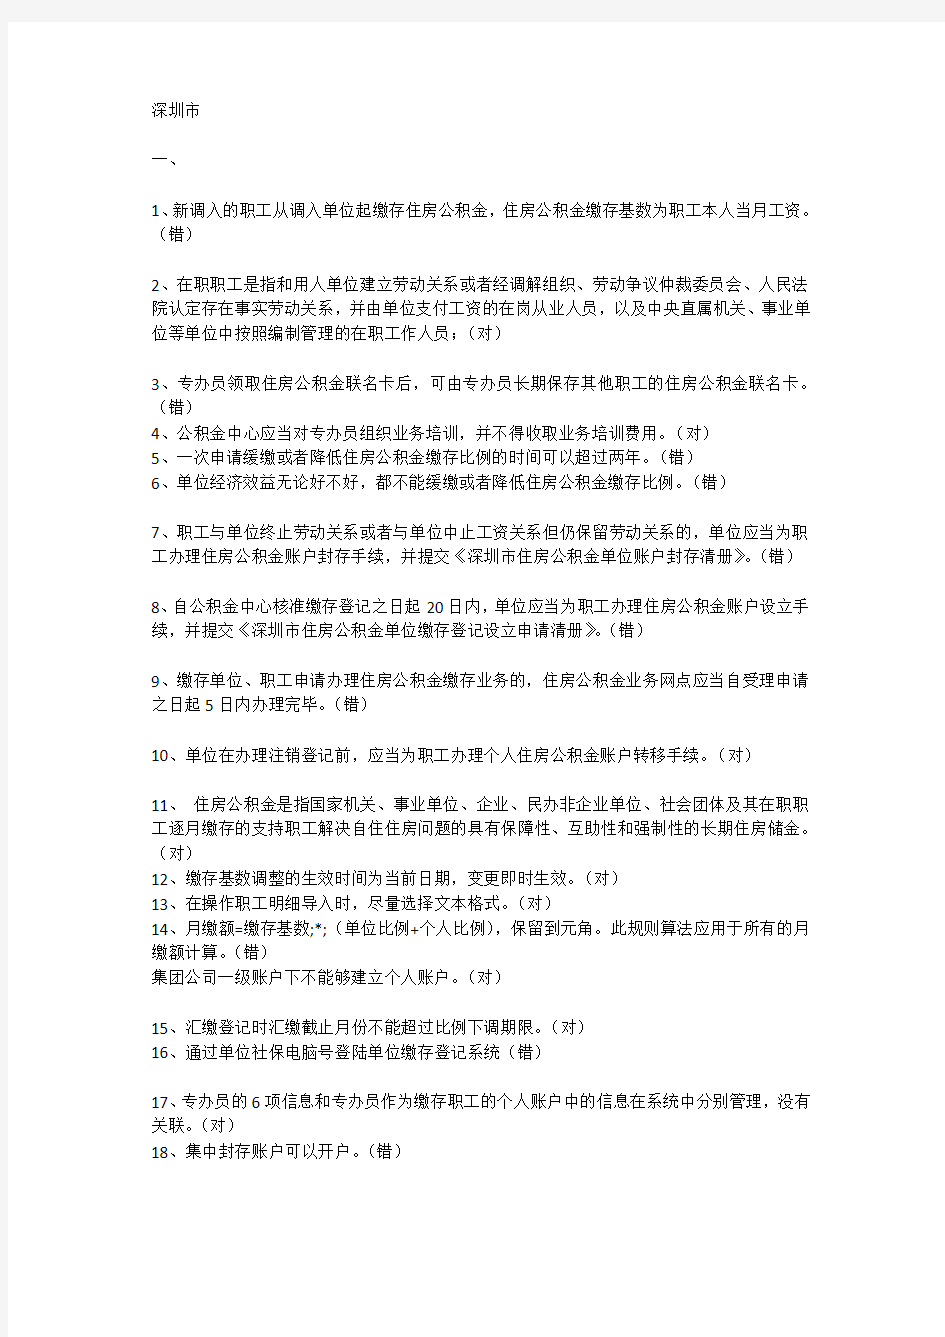 深圳市住房公积金专业考试题目整理